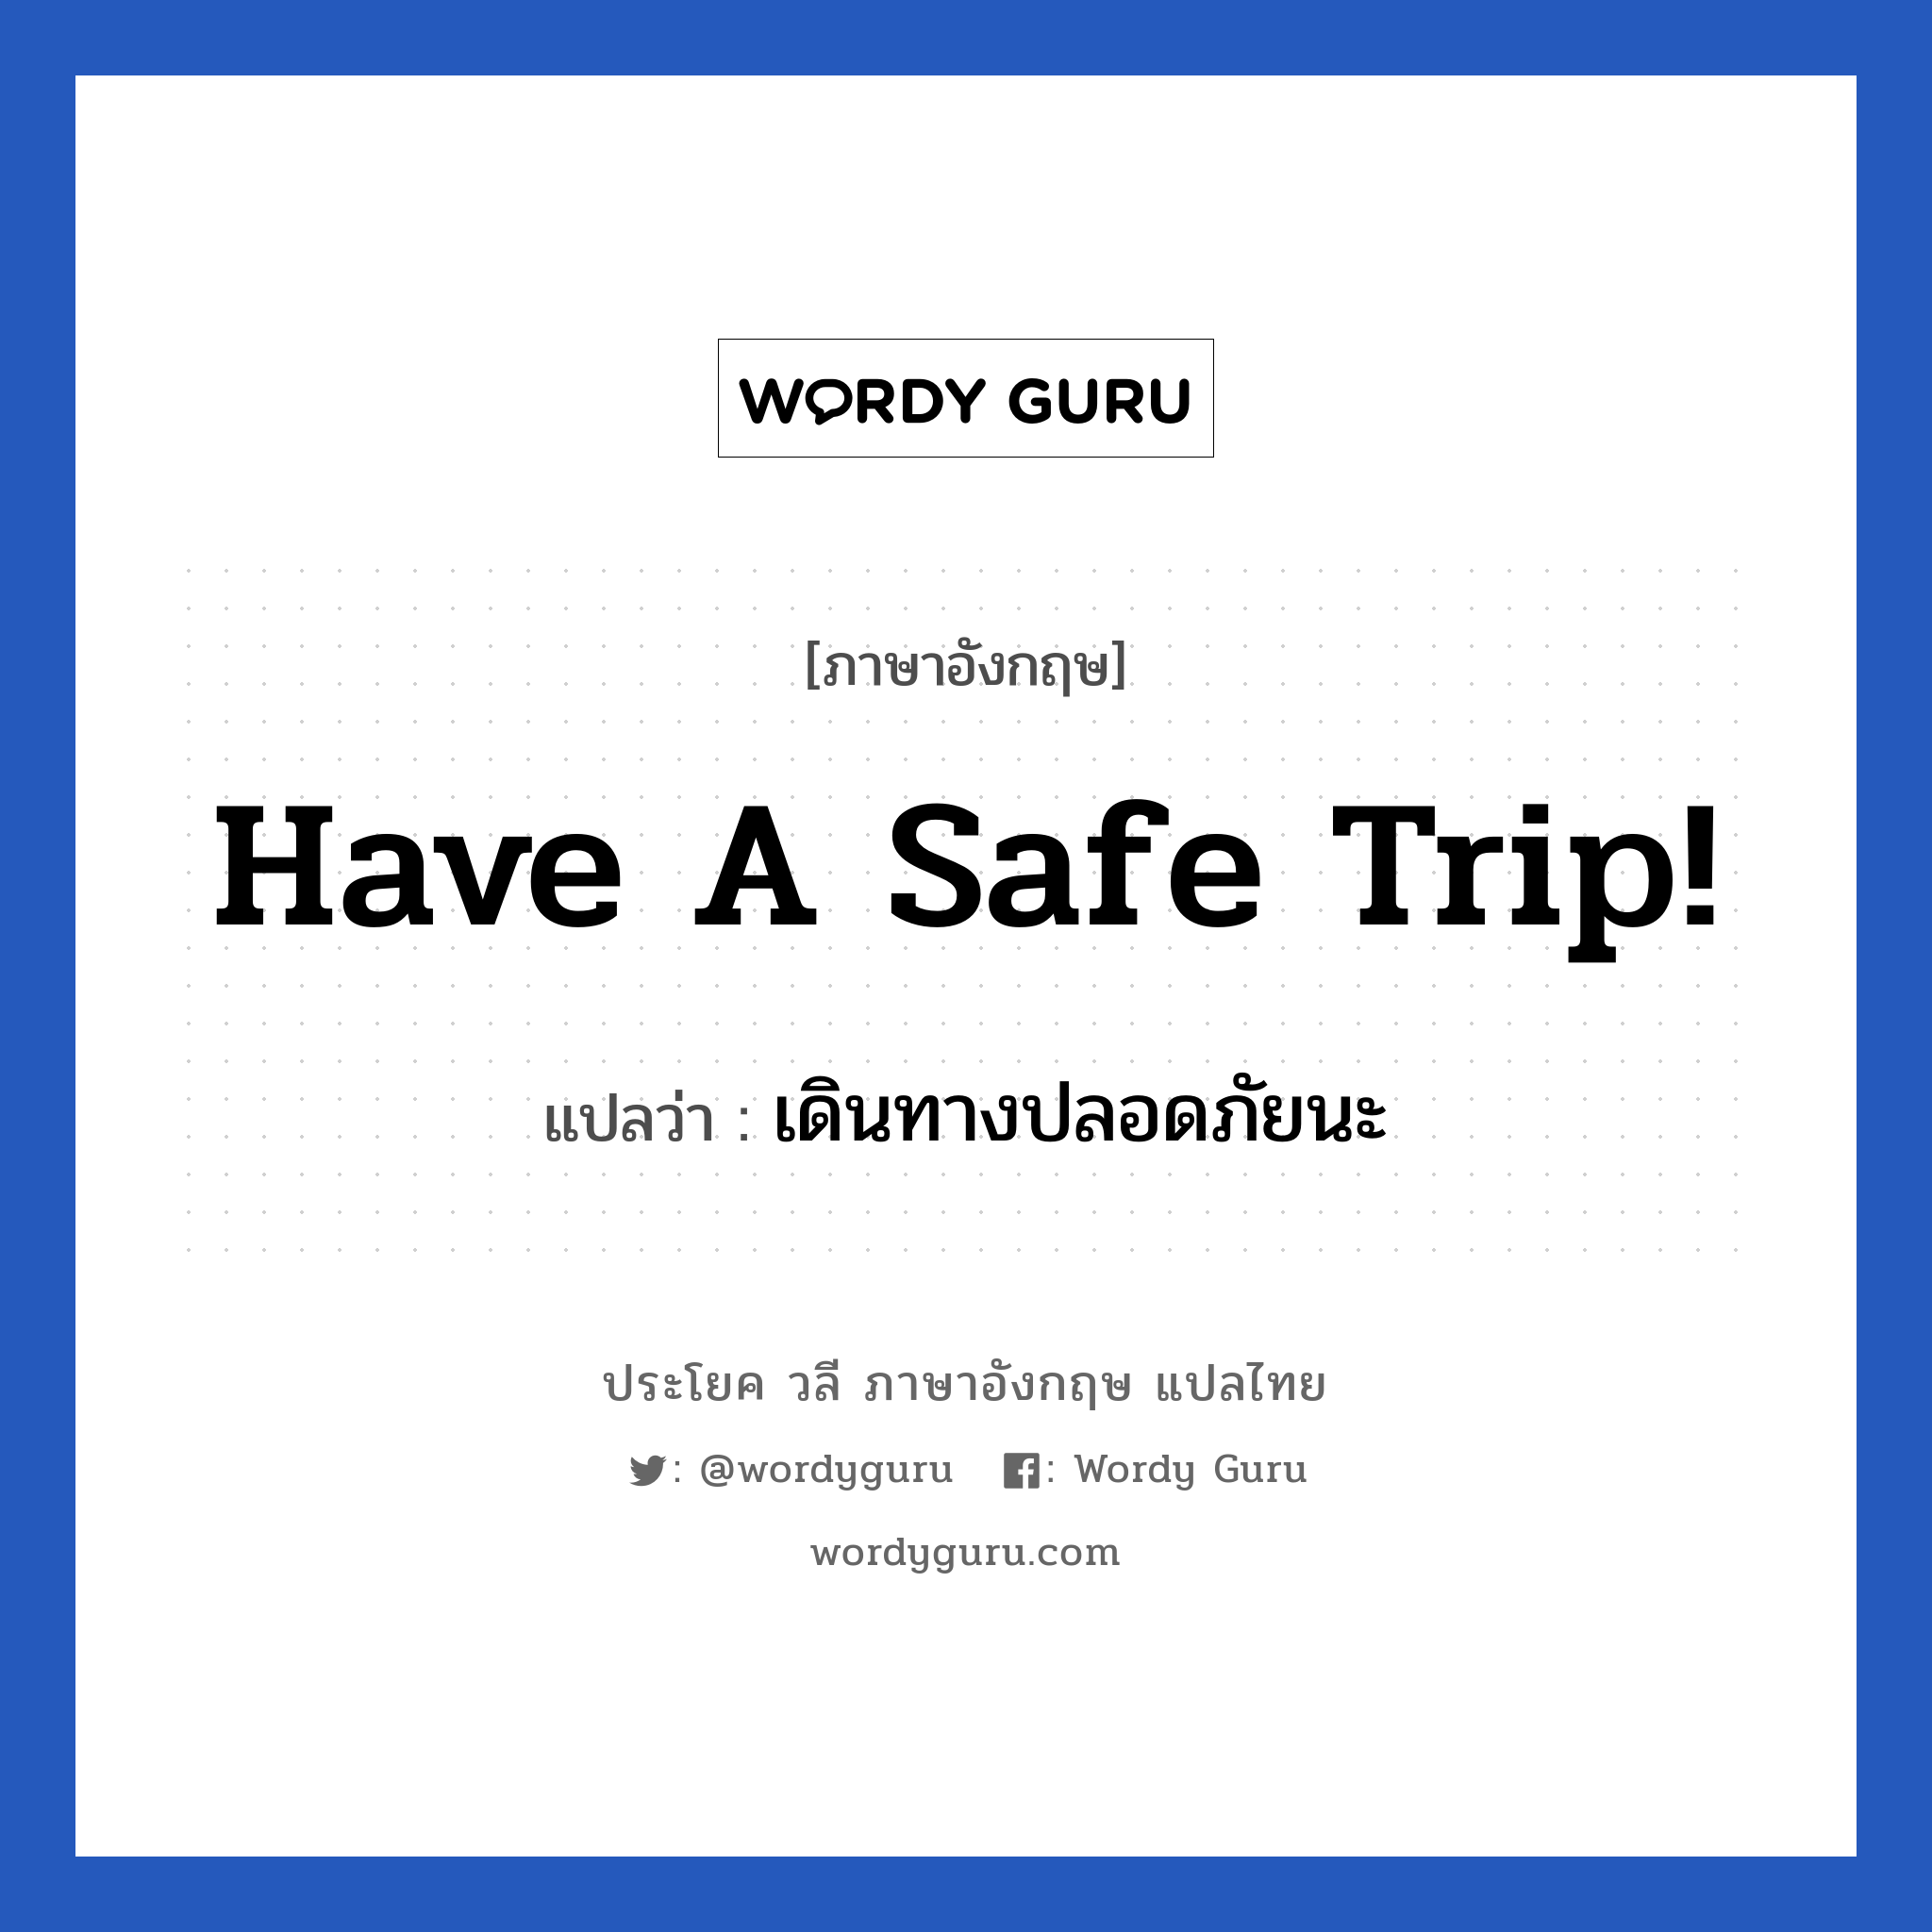 เดินทางปลอดภัยนะ ภาษาอังกฤษ?, วลีภาษาอังกฤษ เดินทางปลอดภัยนะ แปลว่า Have a safe trip!